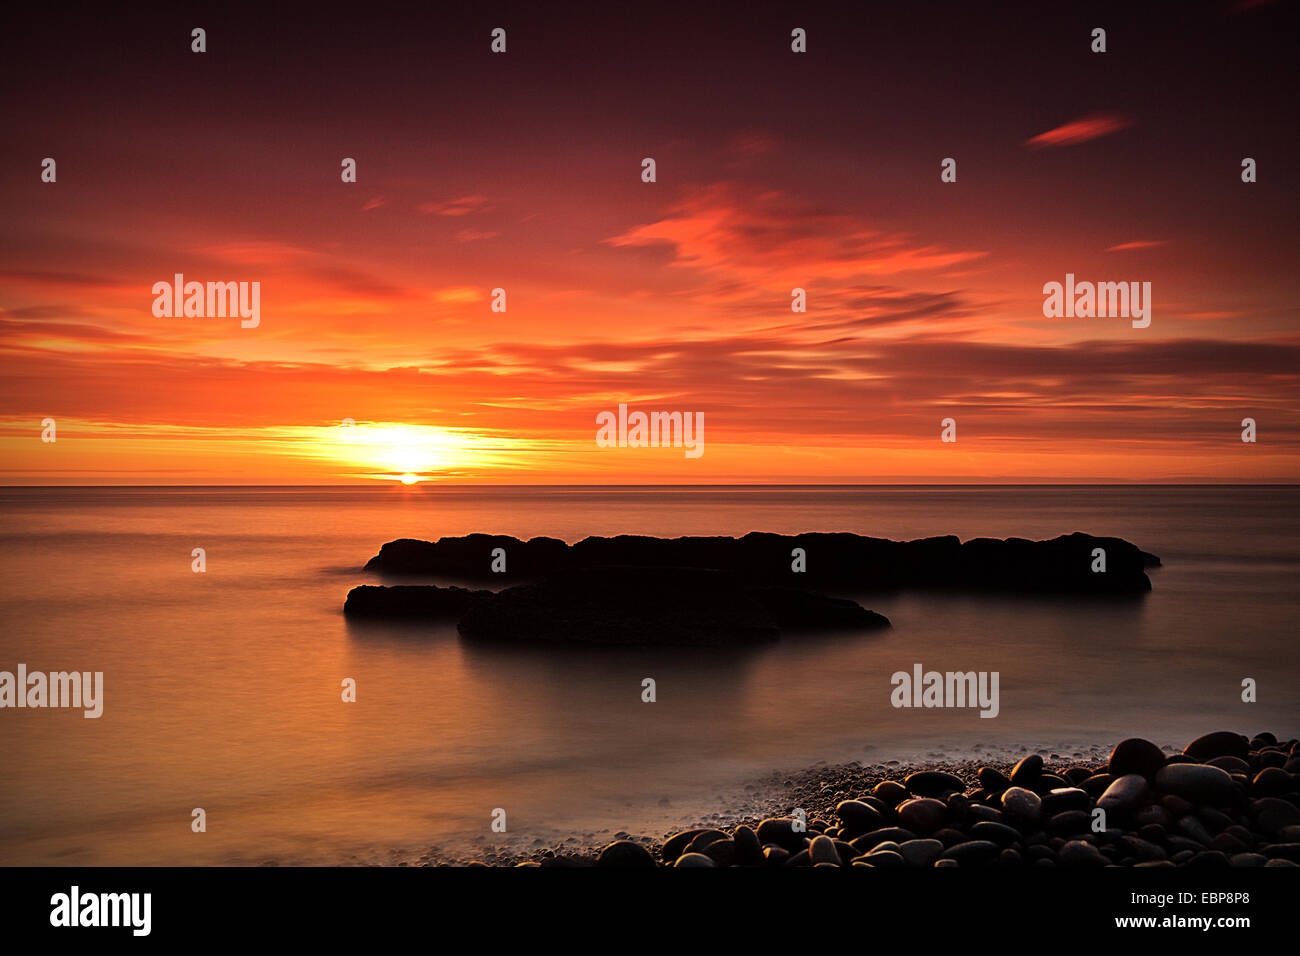 Sunset, Landscape, Seascape, Rocks, Sun, Warm, Bright, Colours, colors, Sunrise, Water, Pebbles, Advertisement Stock Photo